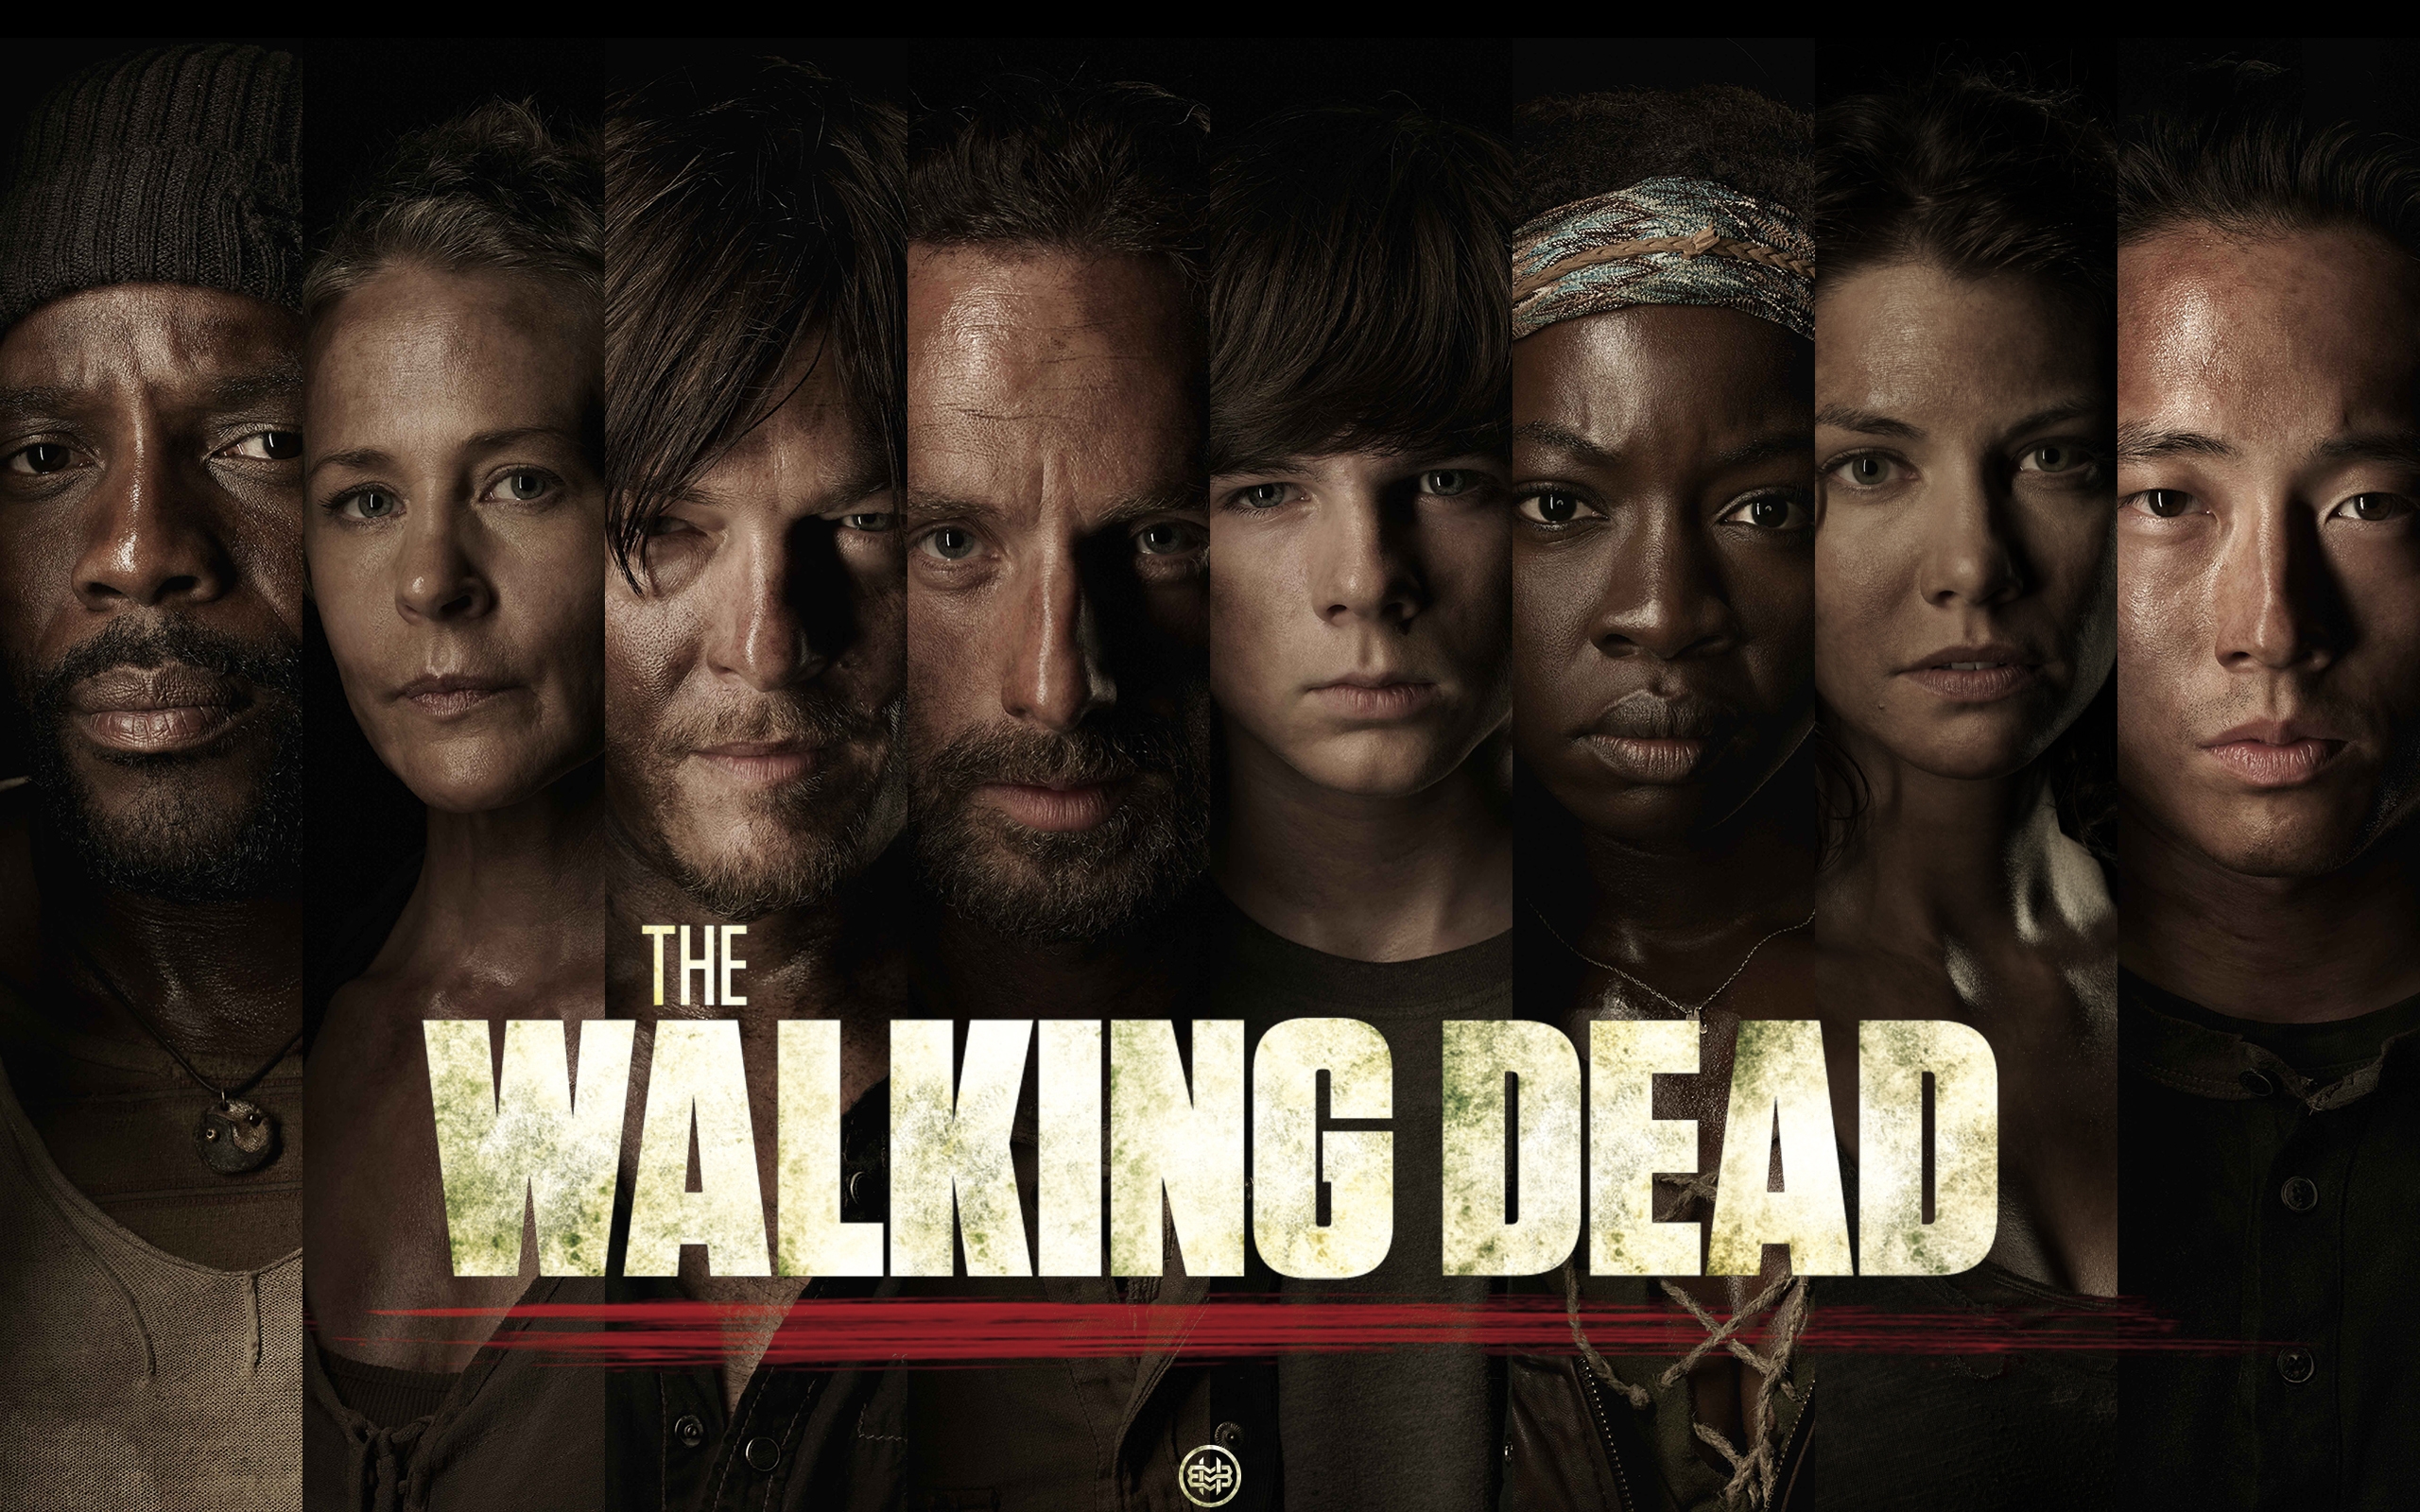 Fear The Walking Dead Season 6 Wallpapers